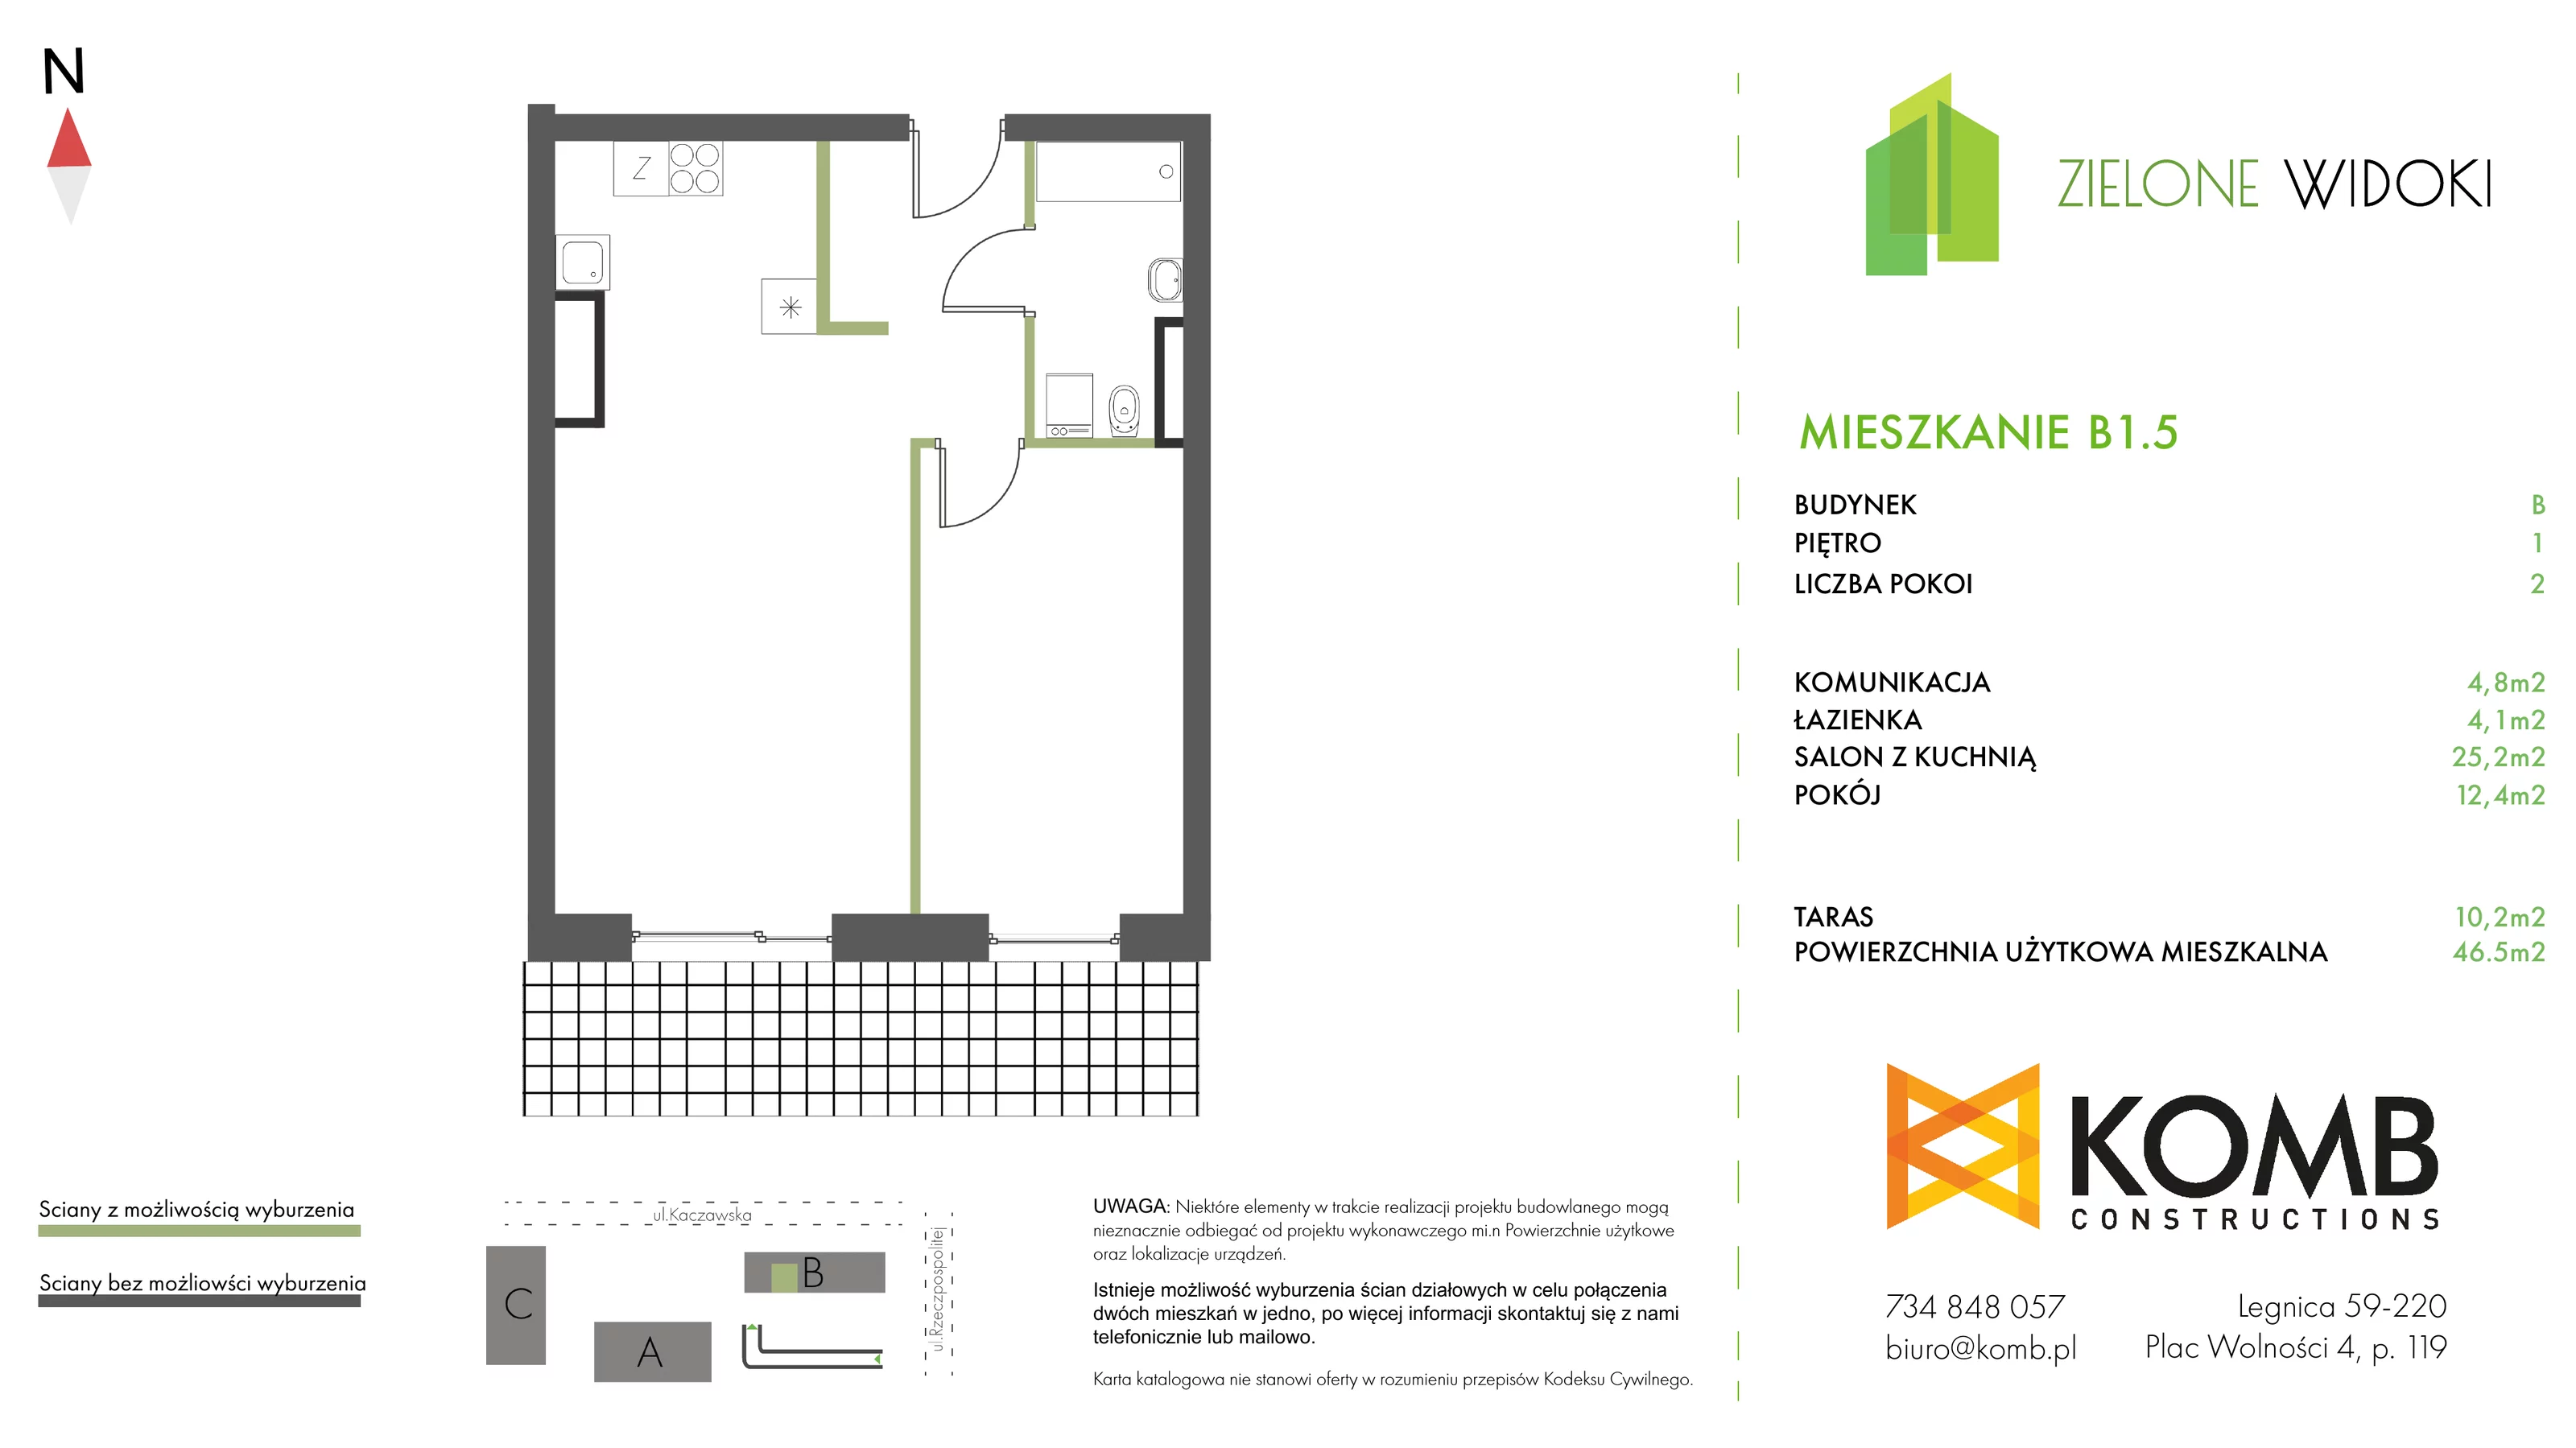 Mieszkanie 46,50 m², piętro 1, oferta nr B1.5, Zielone Widoki, Legnica, Bielany, al. Rzeczypospolitej 23